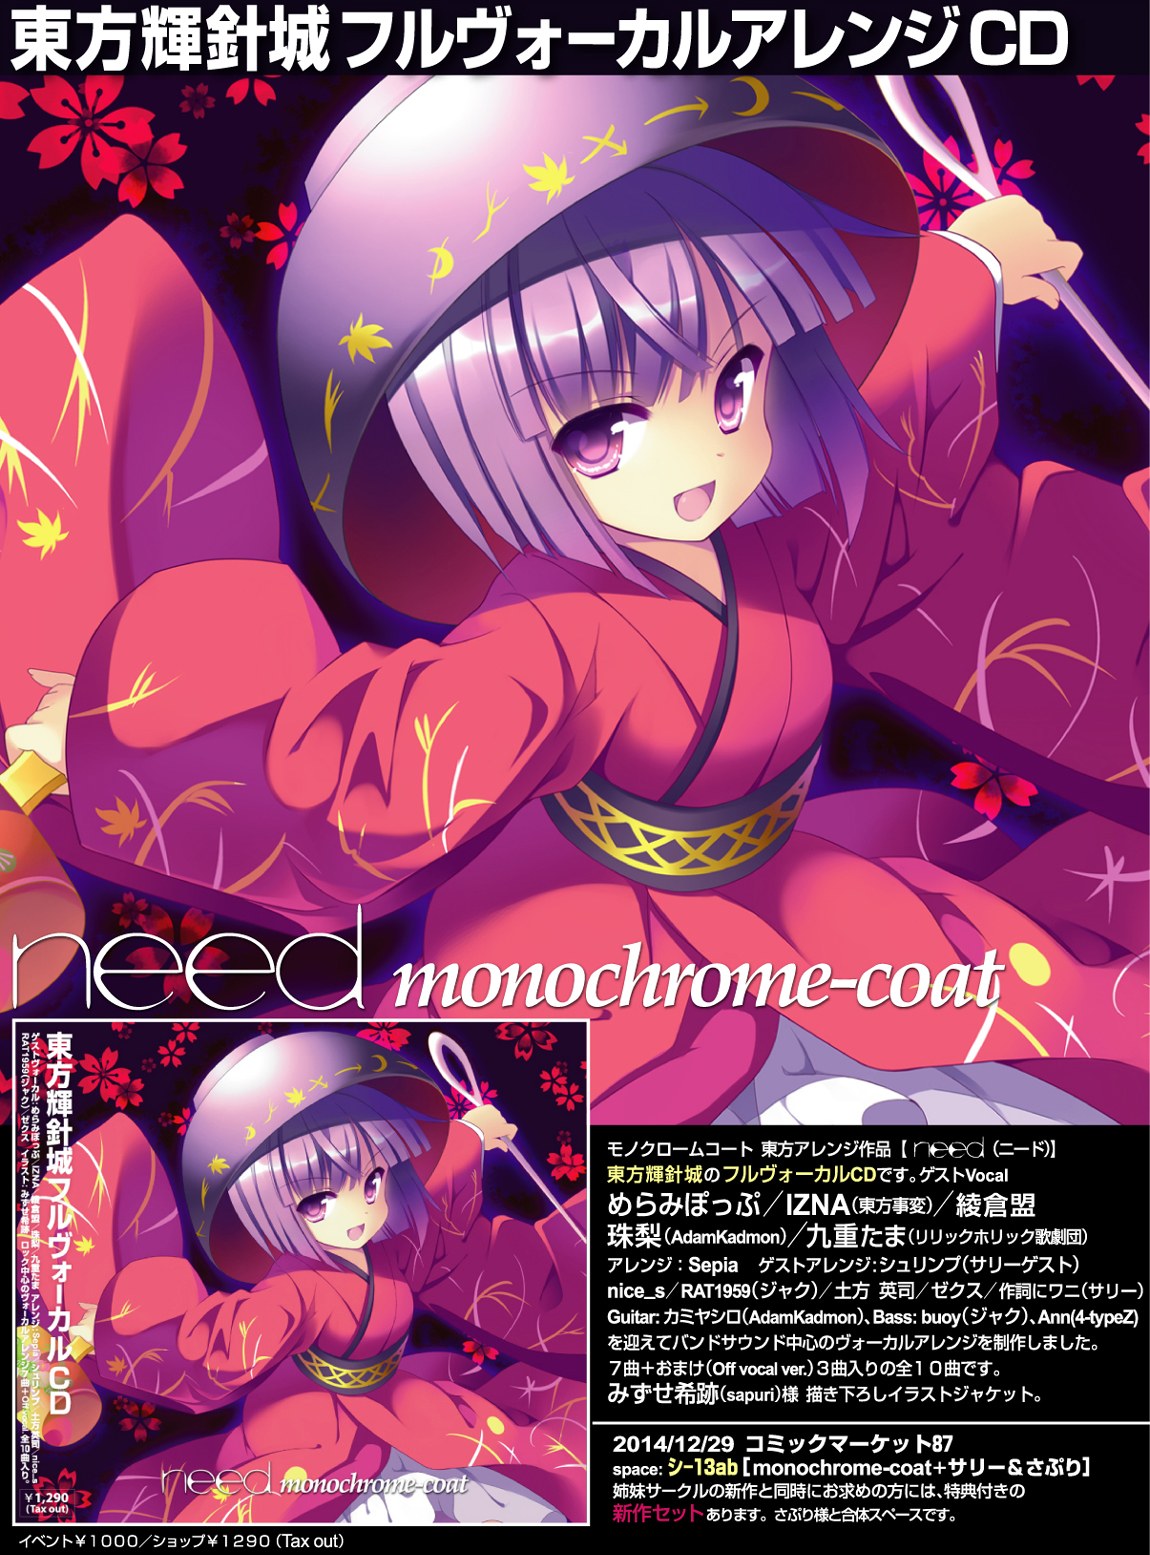 monochrome-coat 15th Album [ need ] 特設ページ 東方輝針城 フル 